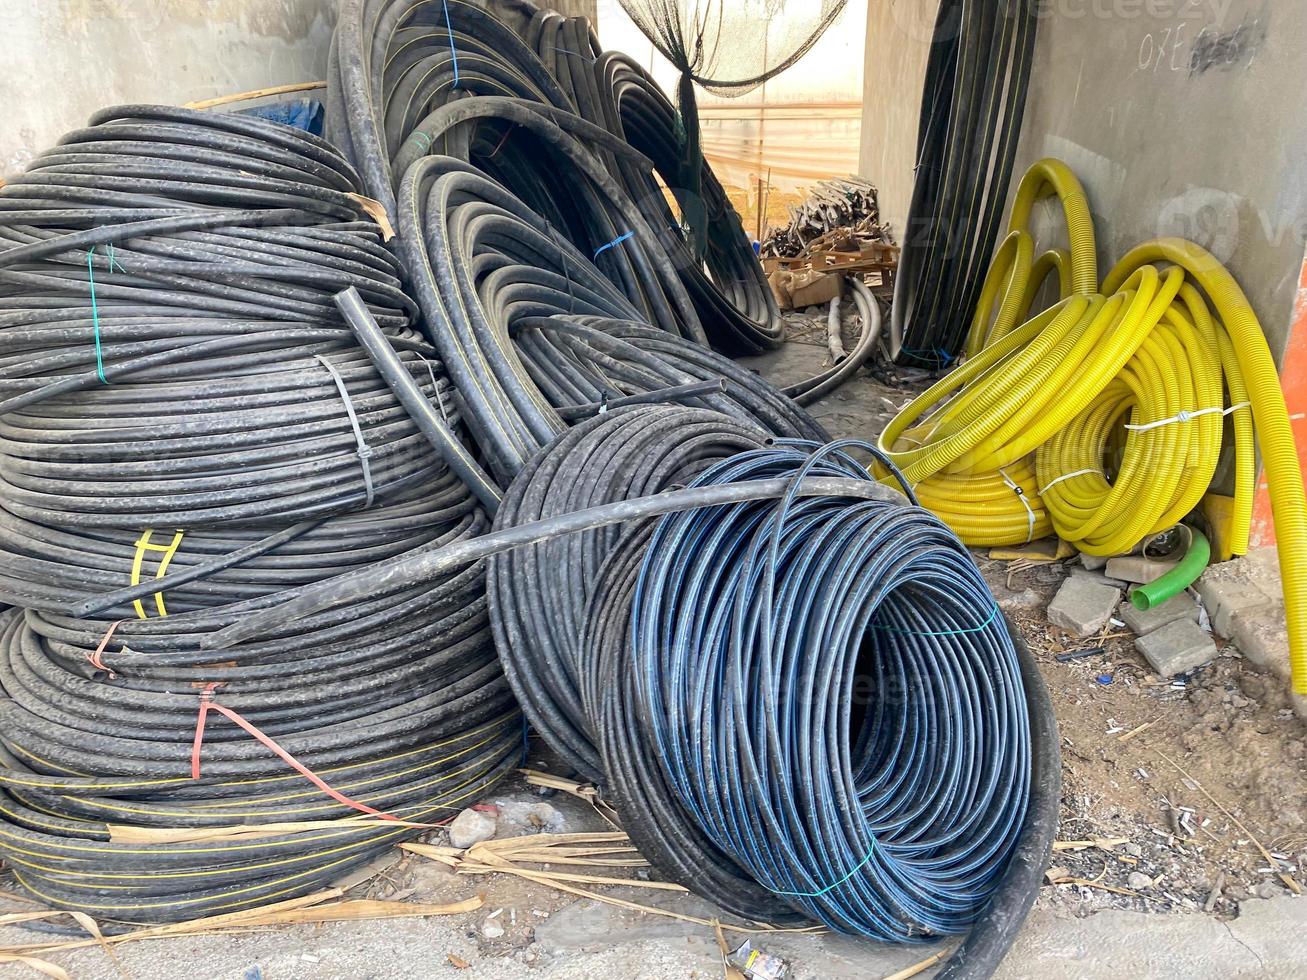 viele große spulen schwarzer kabel in kunststoffisolierung oder elektrische drähte für strom in einem industrielager foto